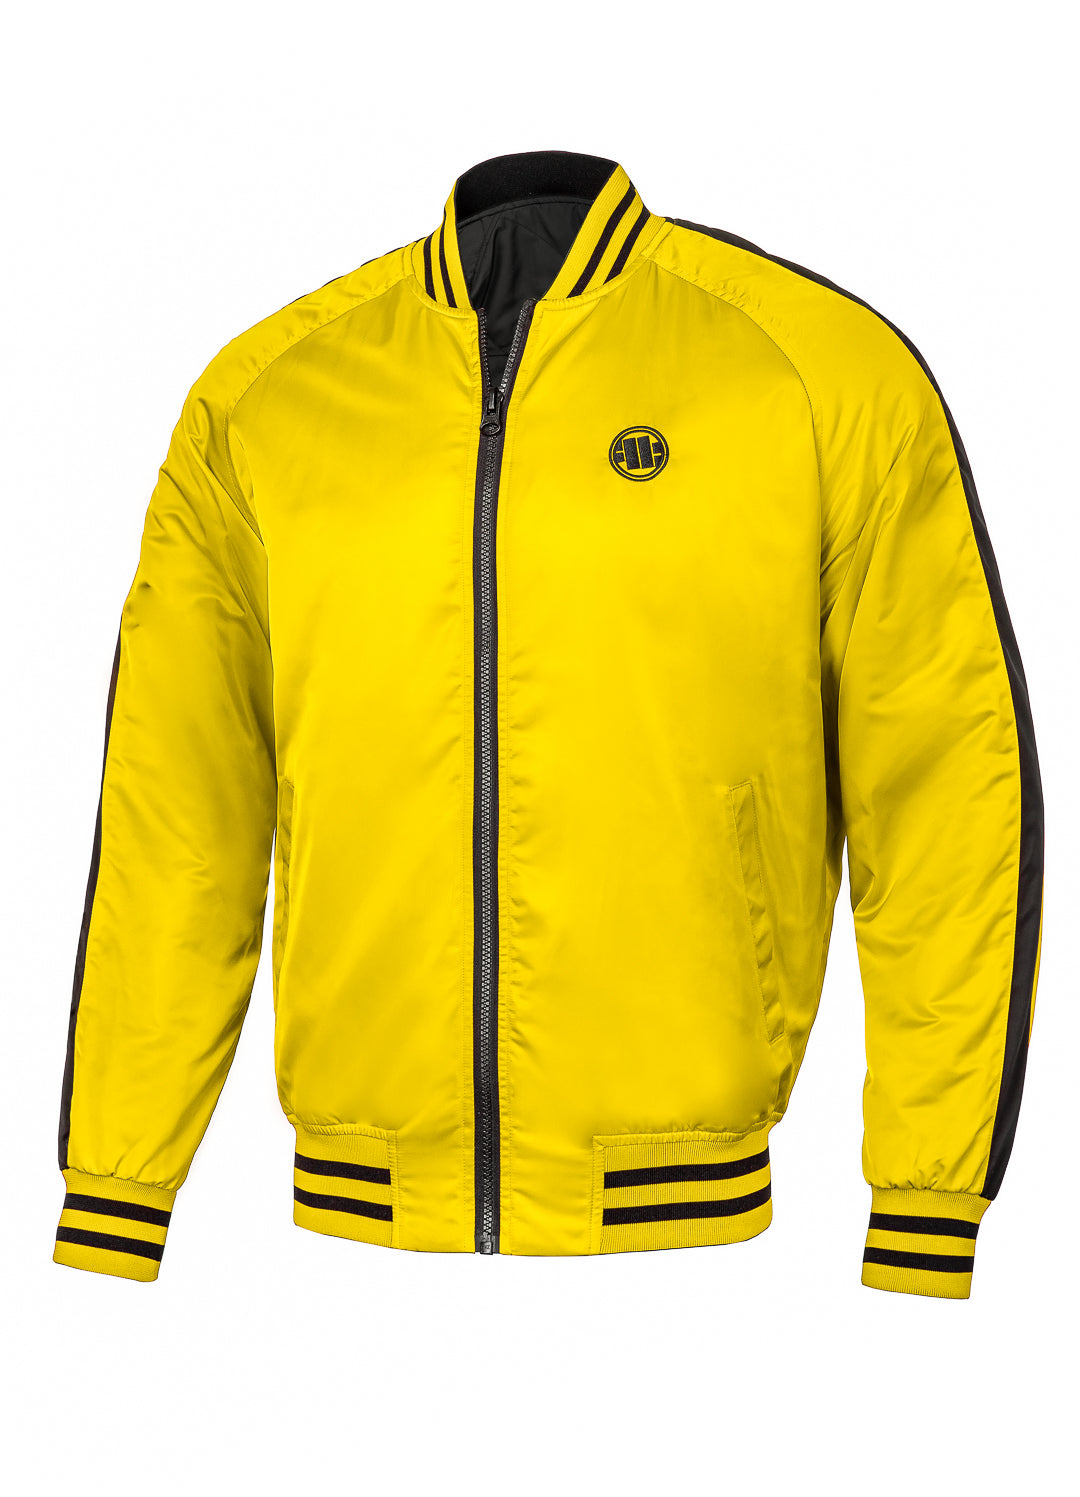 BROADWAY BIG LOGO Yellow Reversible Jacket.